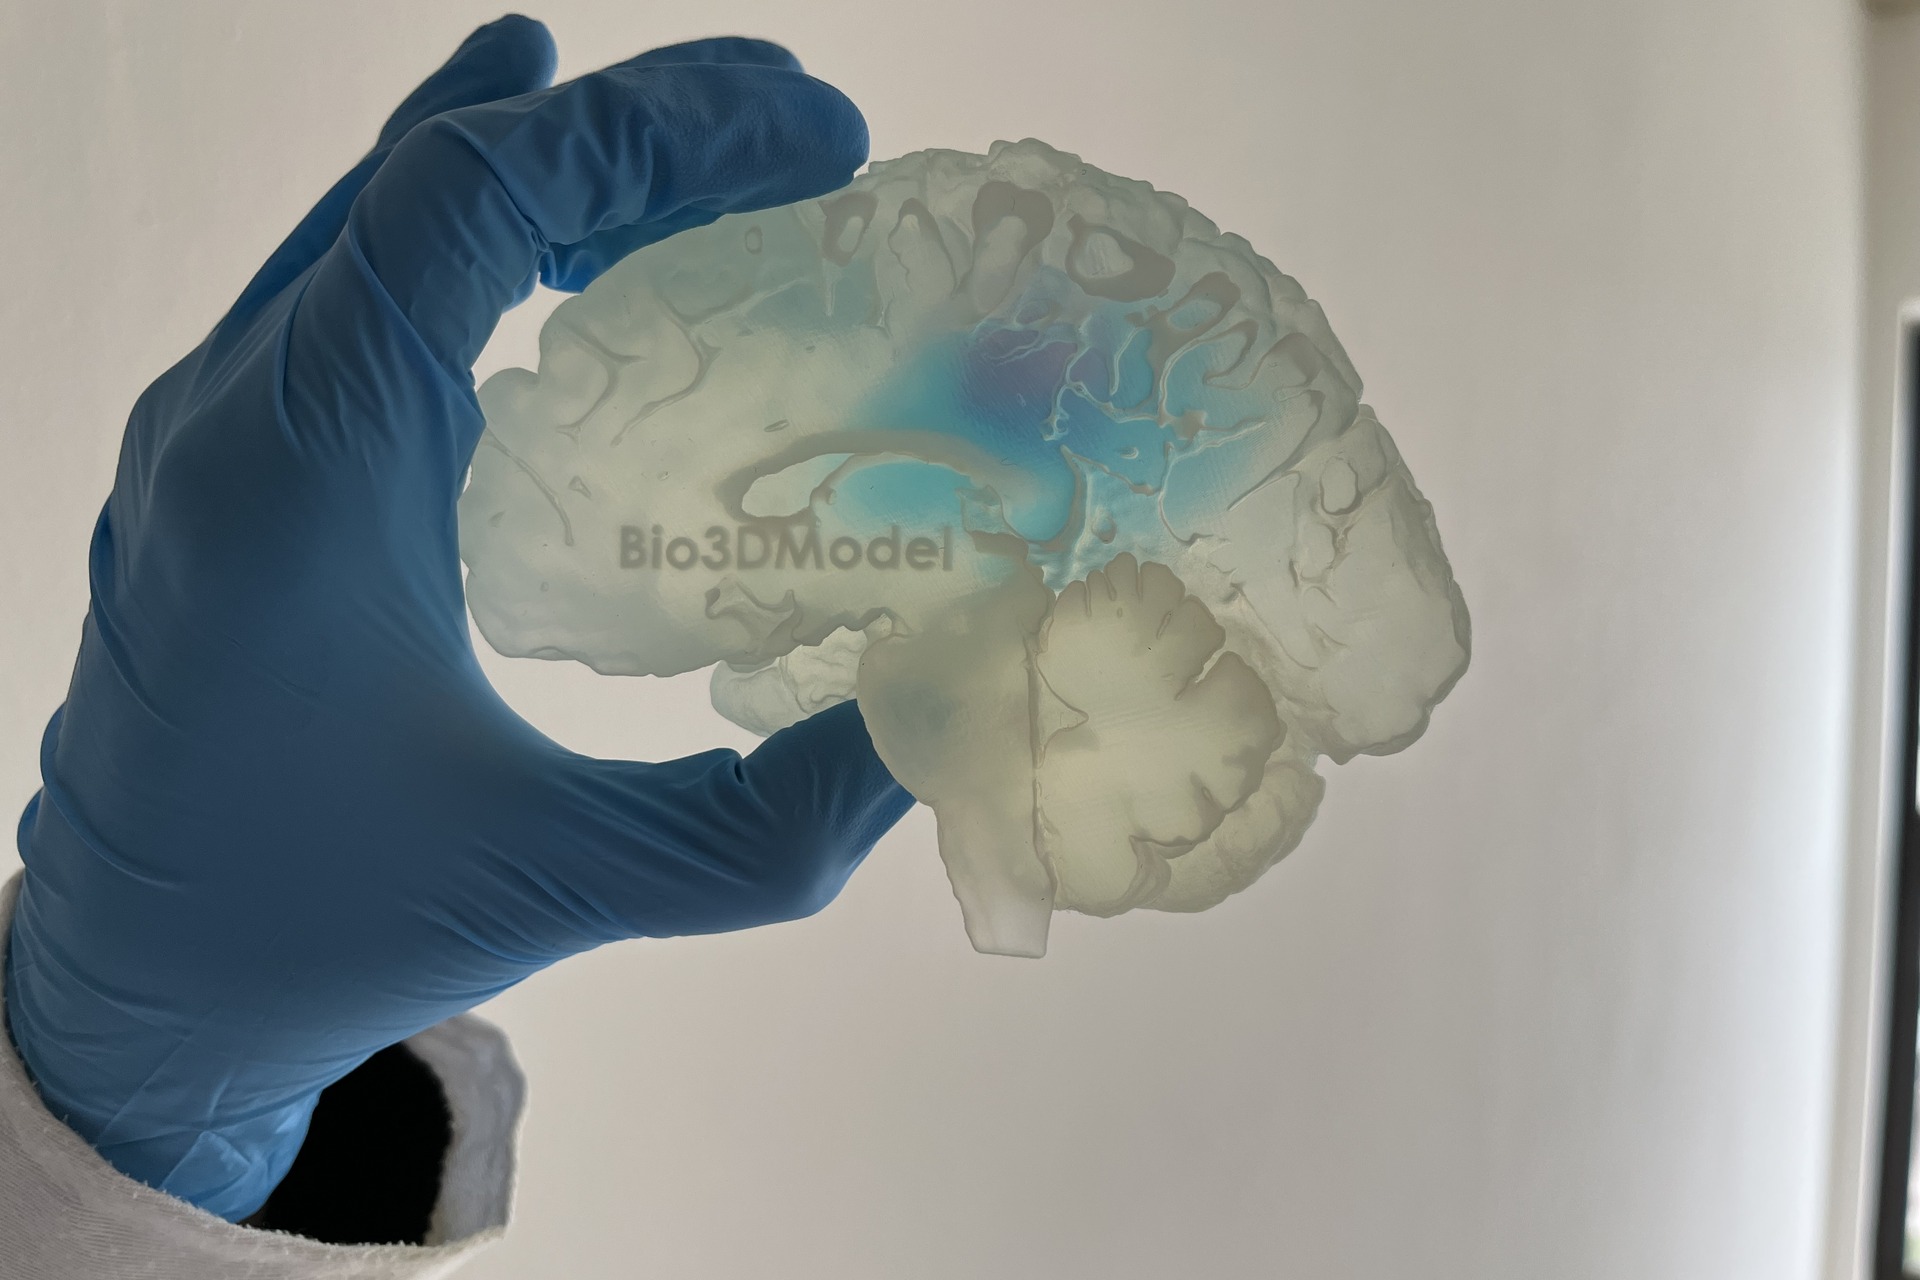 Cervello umano: la riproduzione di un cervello affetto da metastasi e stampato in 3D dalla società italiana Bio3DModel